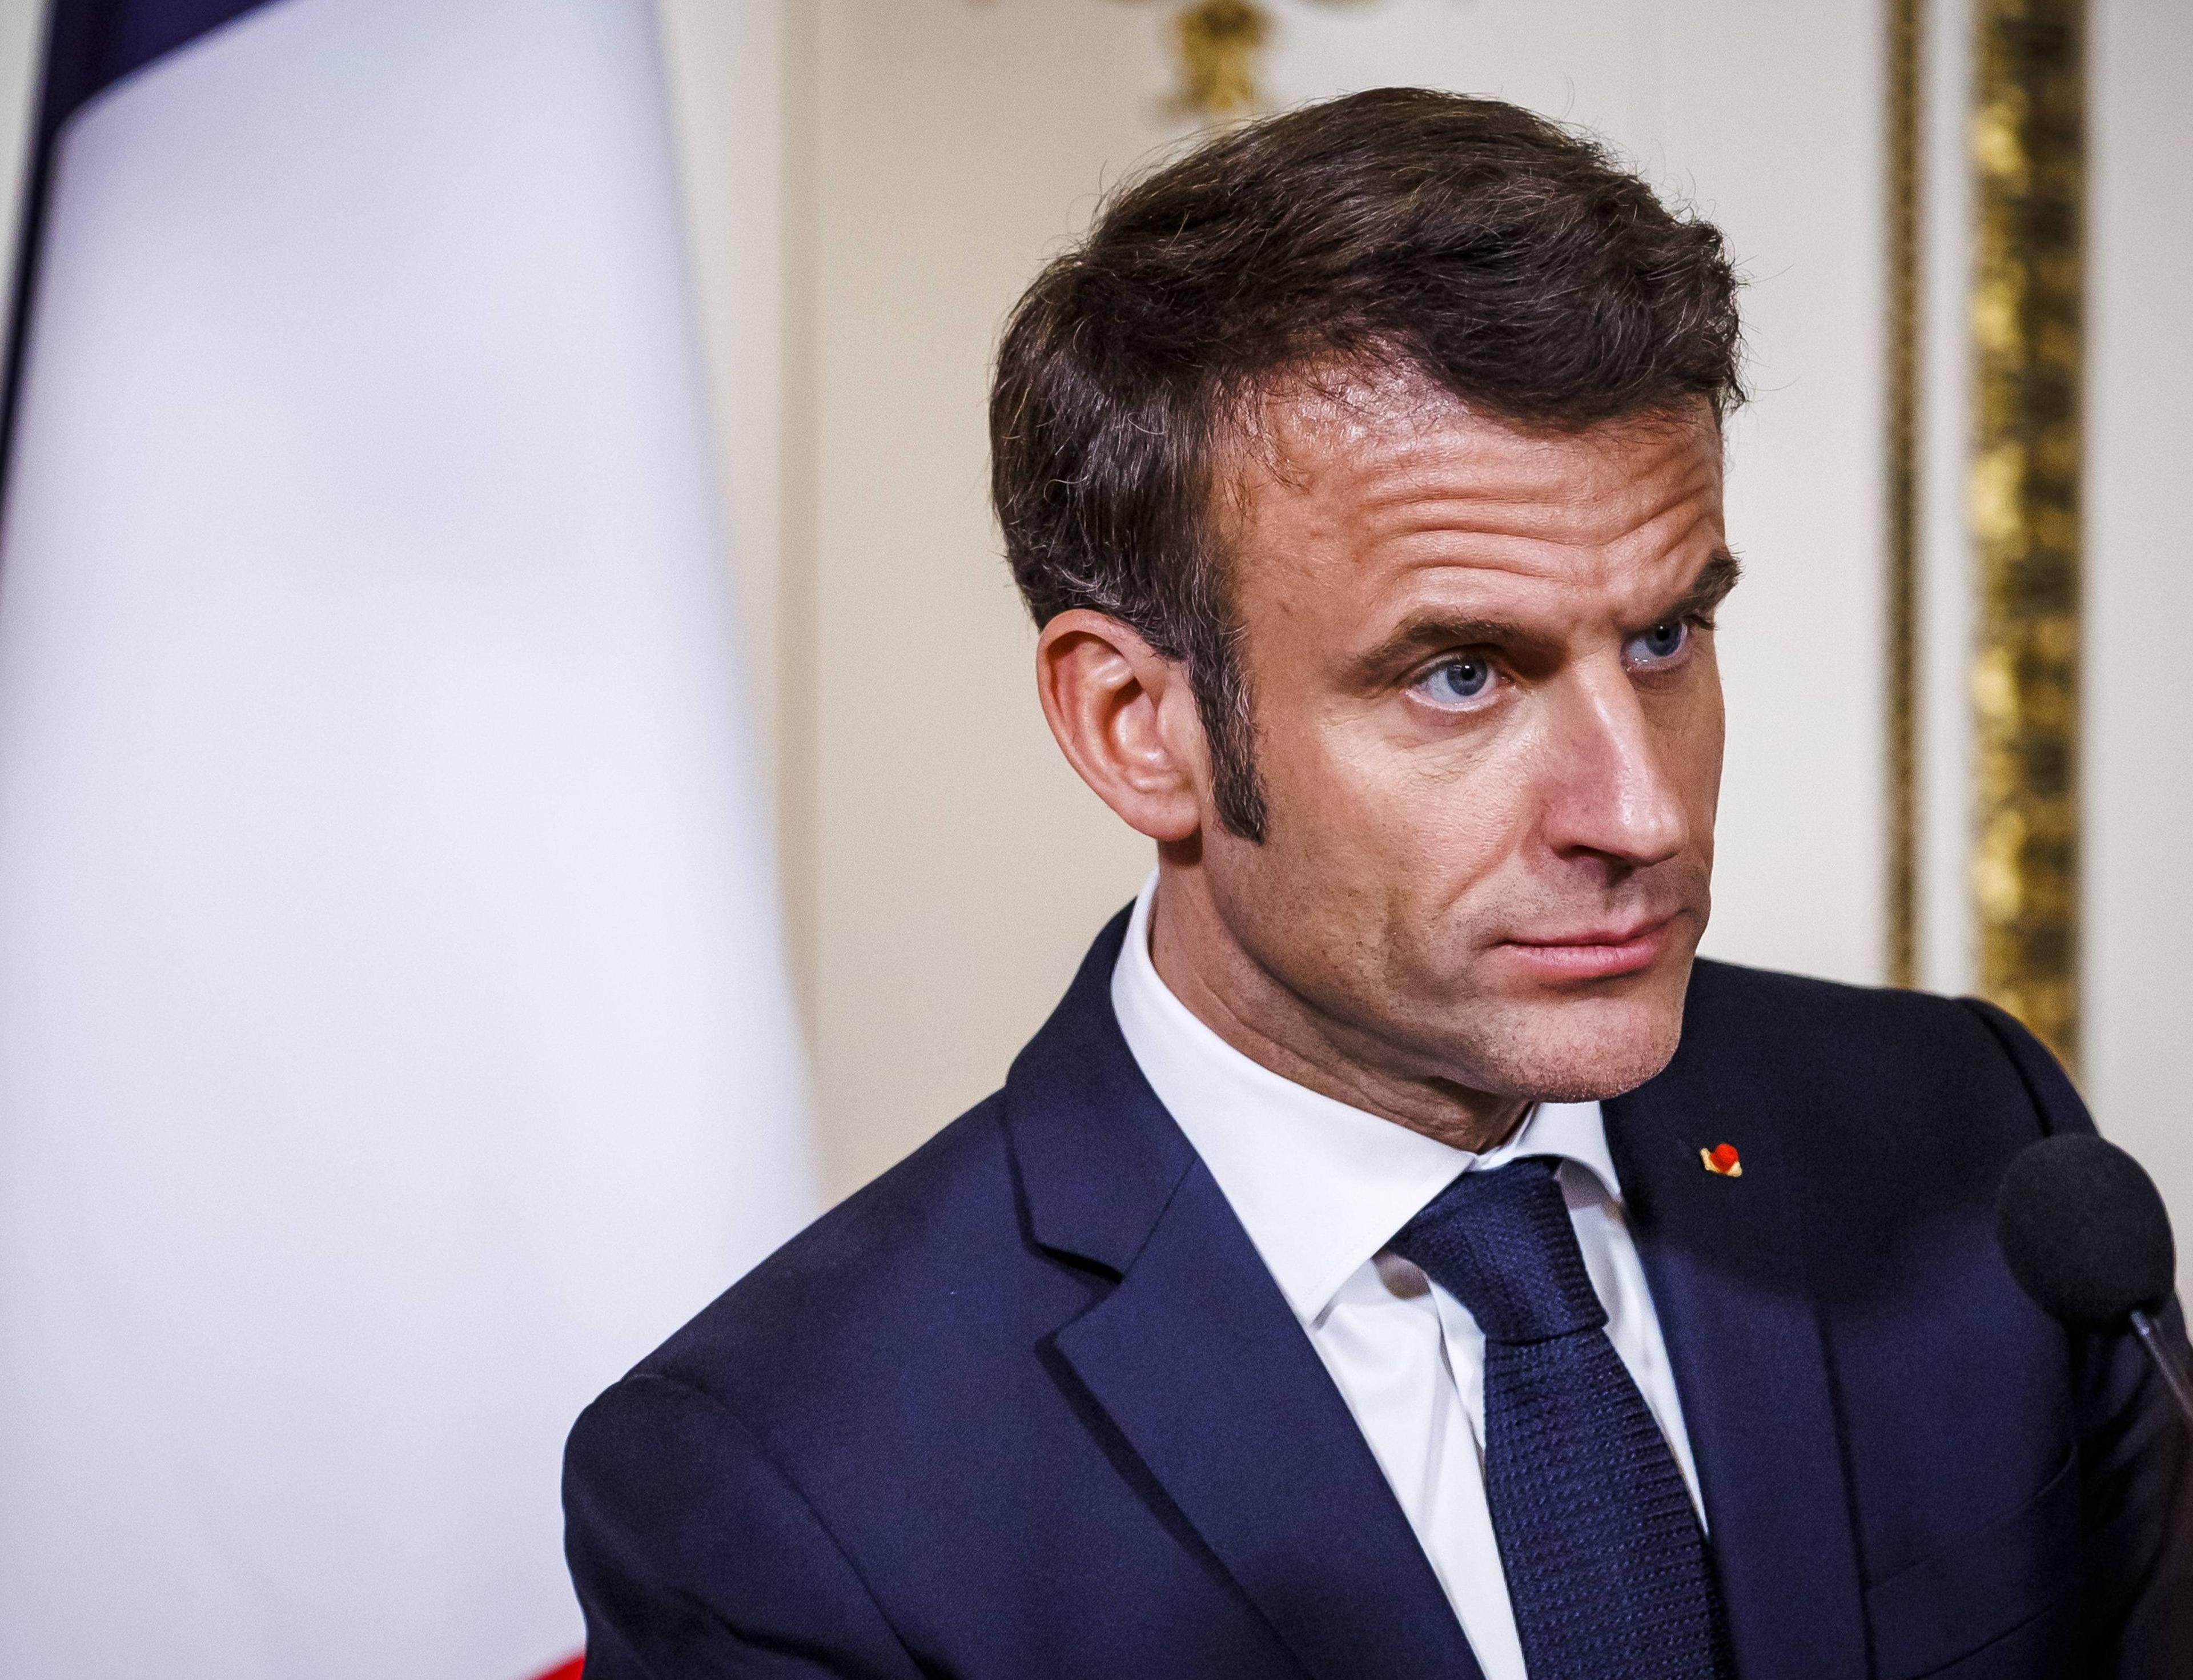 Nach der Umsetzung der umstrittenen Rentenreform plant Macron eine harte Sparoffensive.